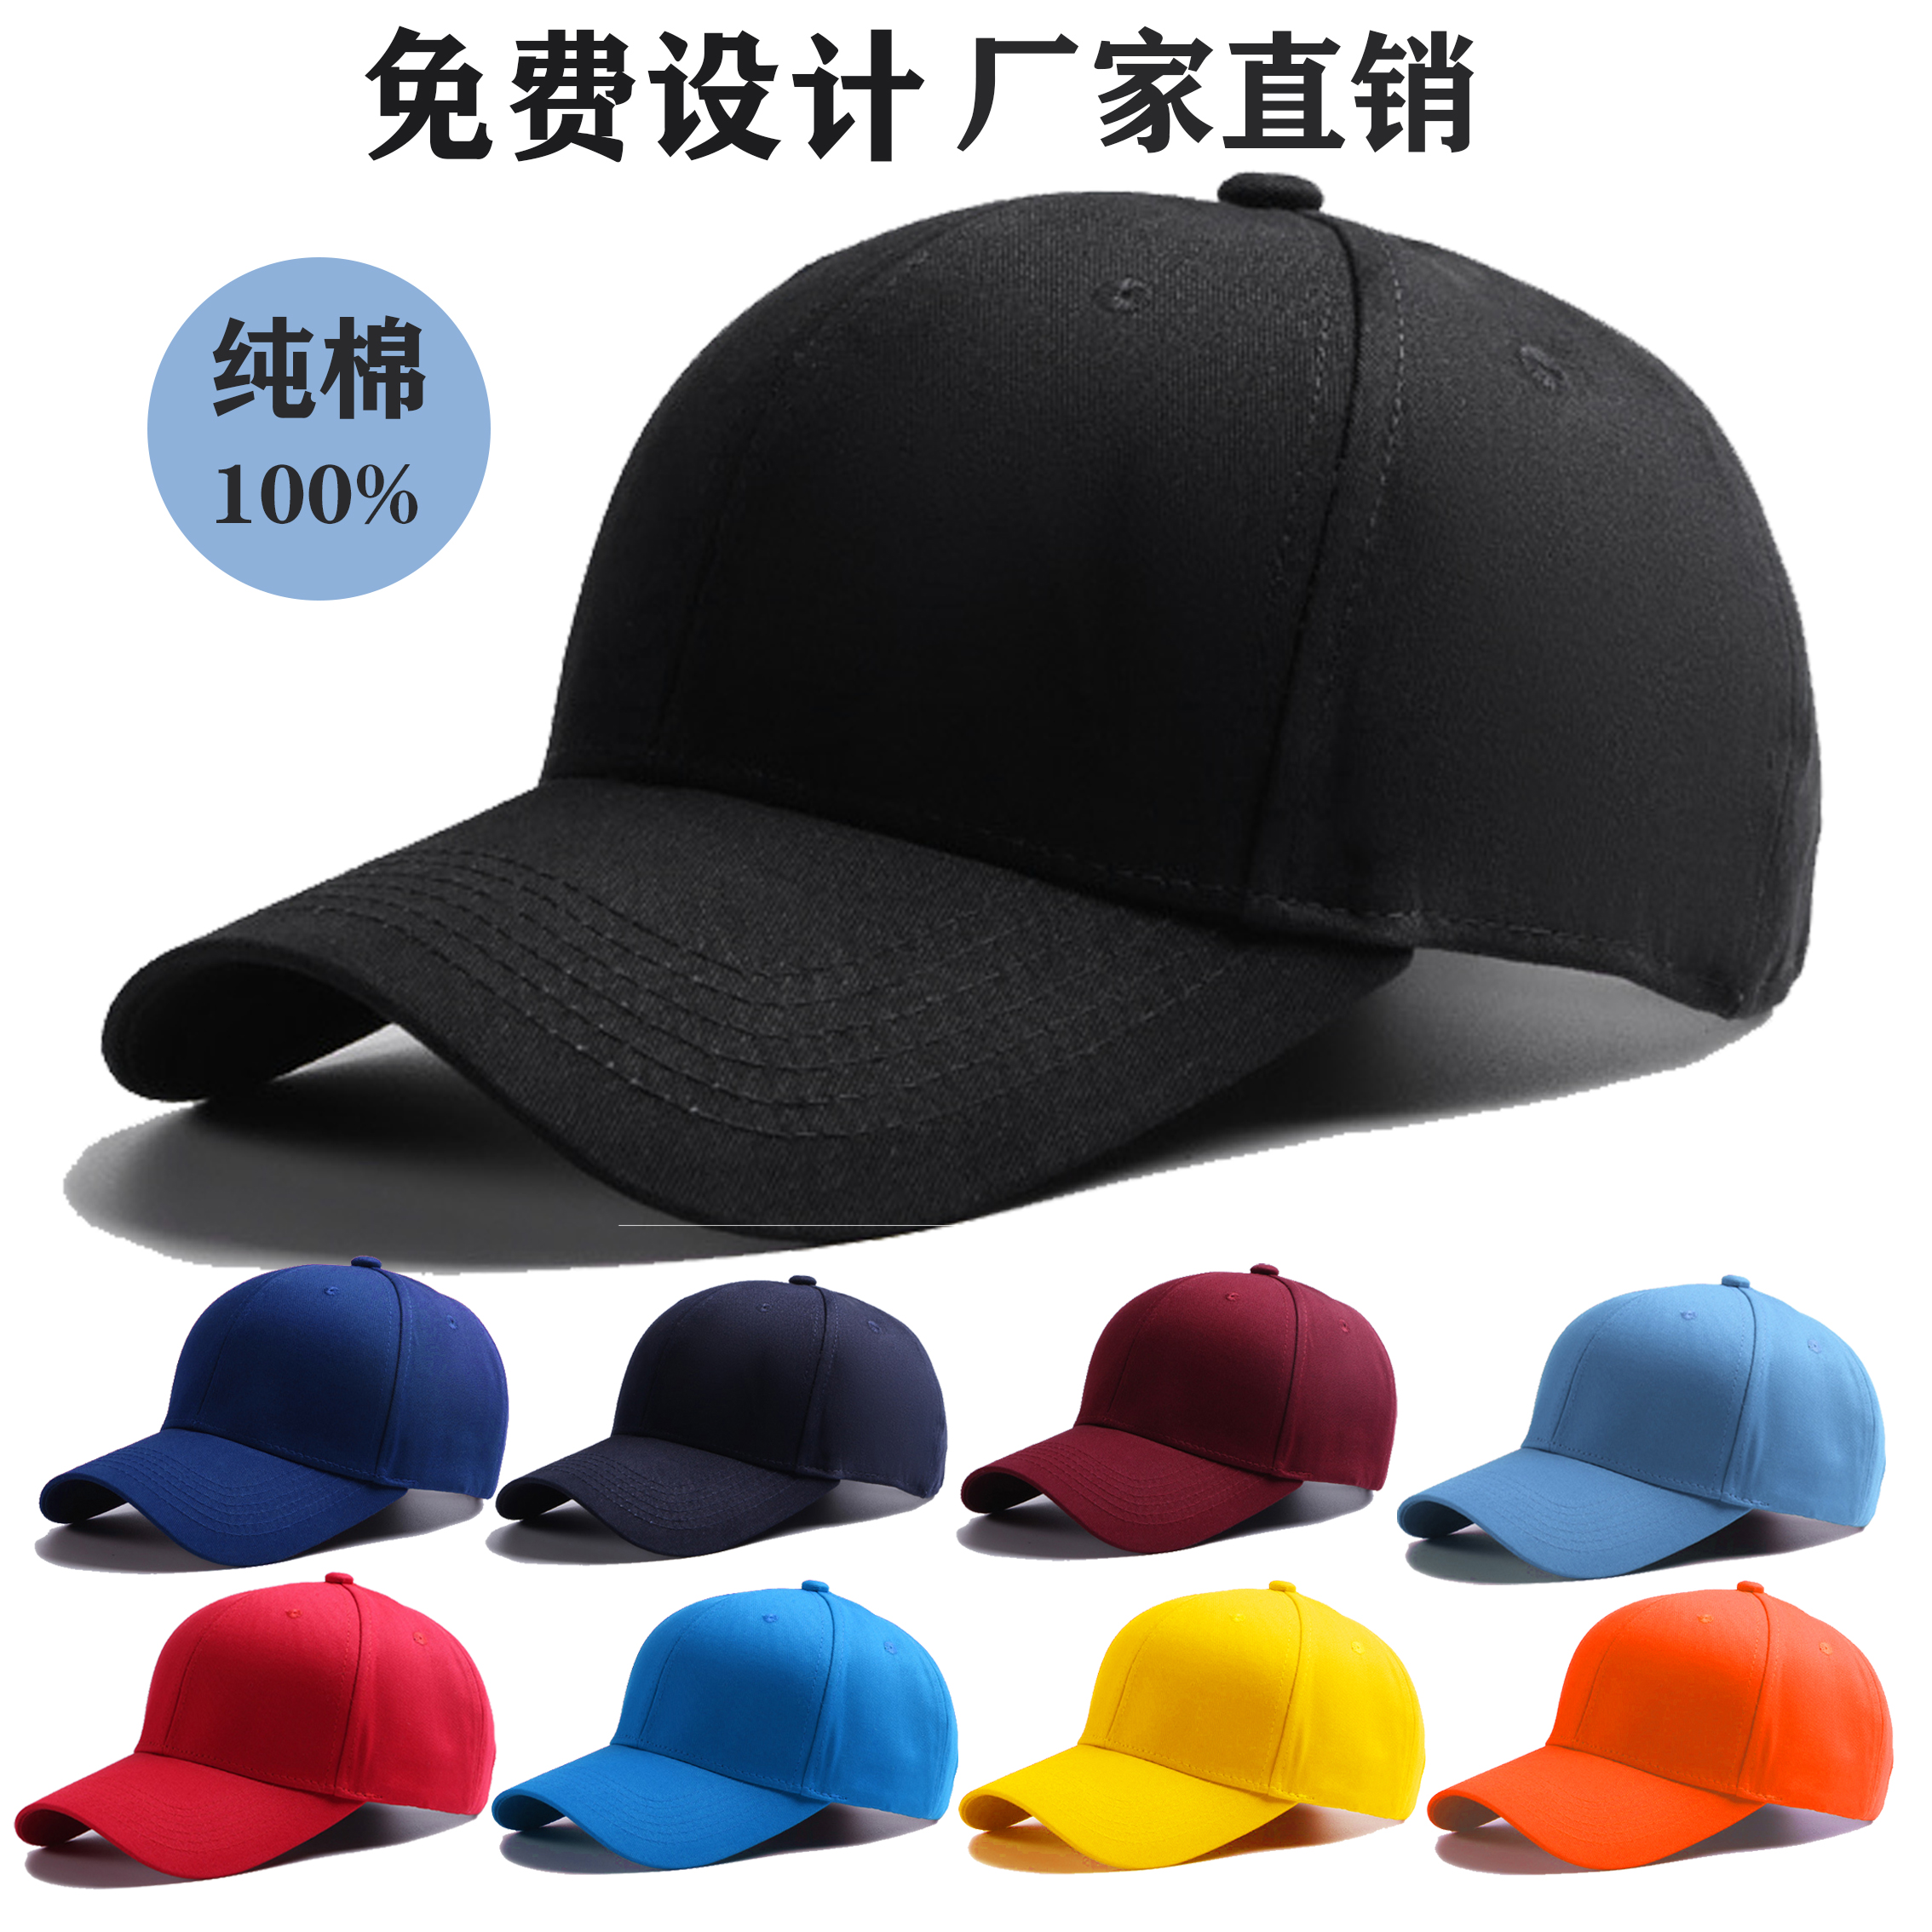 定制棒球帽太阳帽工作帽男女高尔夫帽广告帽印字刺绣logo定做团购